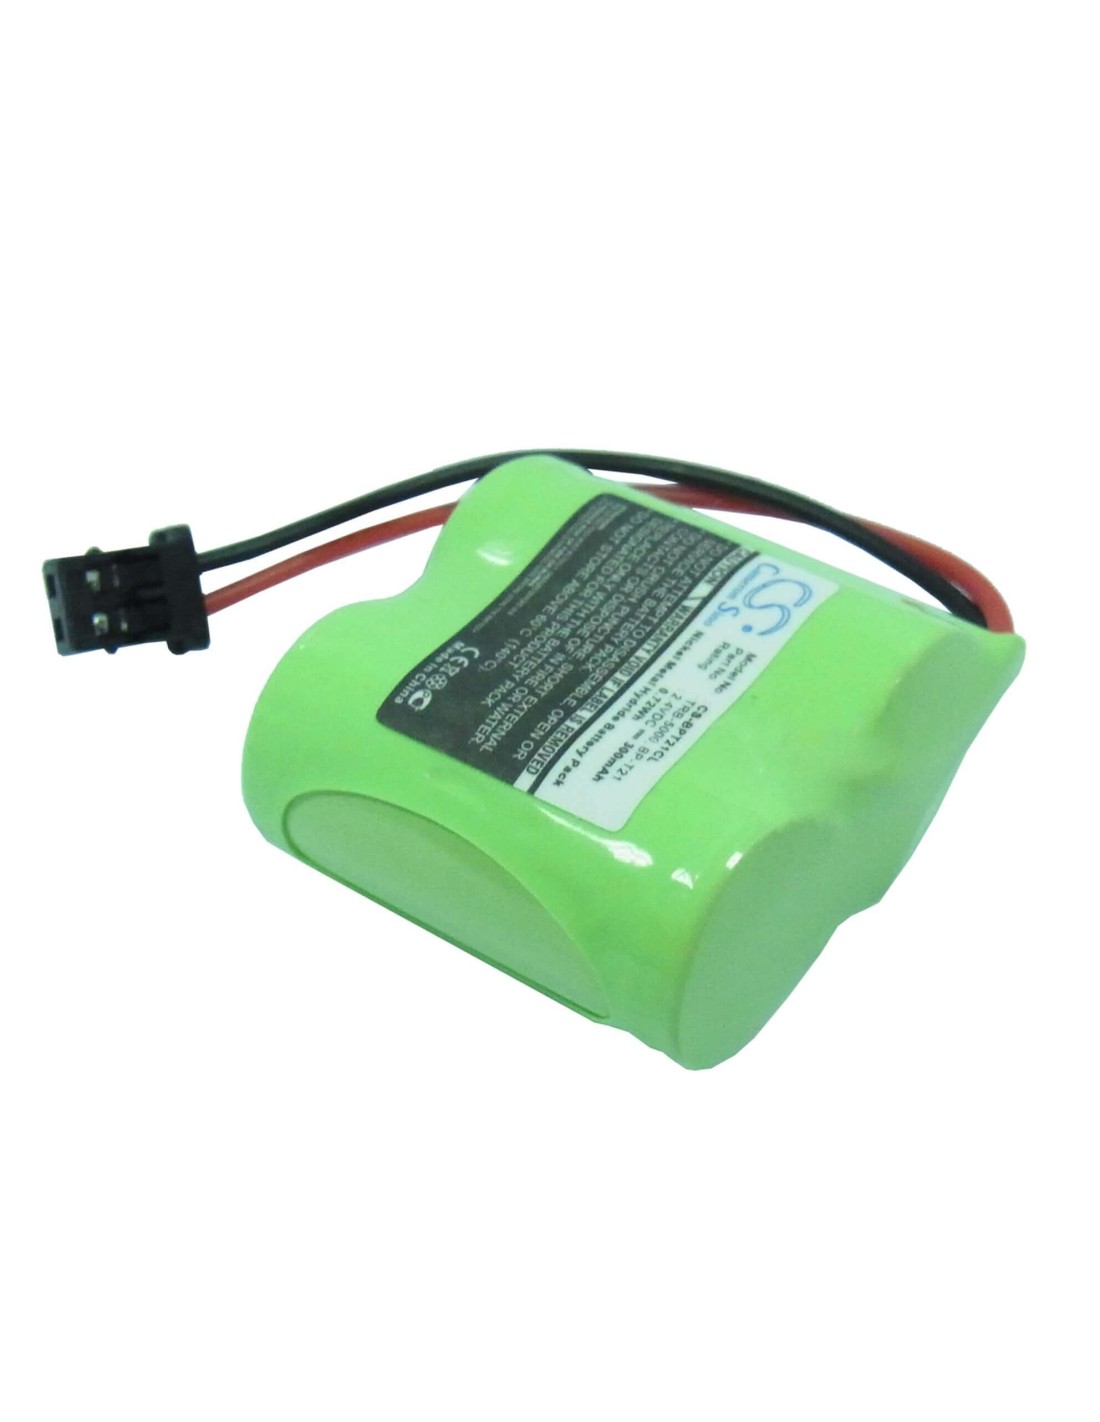 Battery for Radio Shack, 23-954, 960-1371 2.4V, 300mAh - 0.72Wh